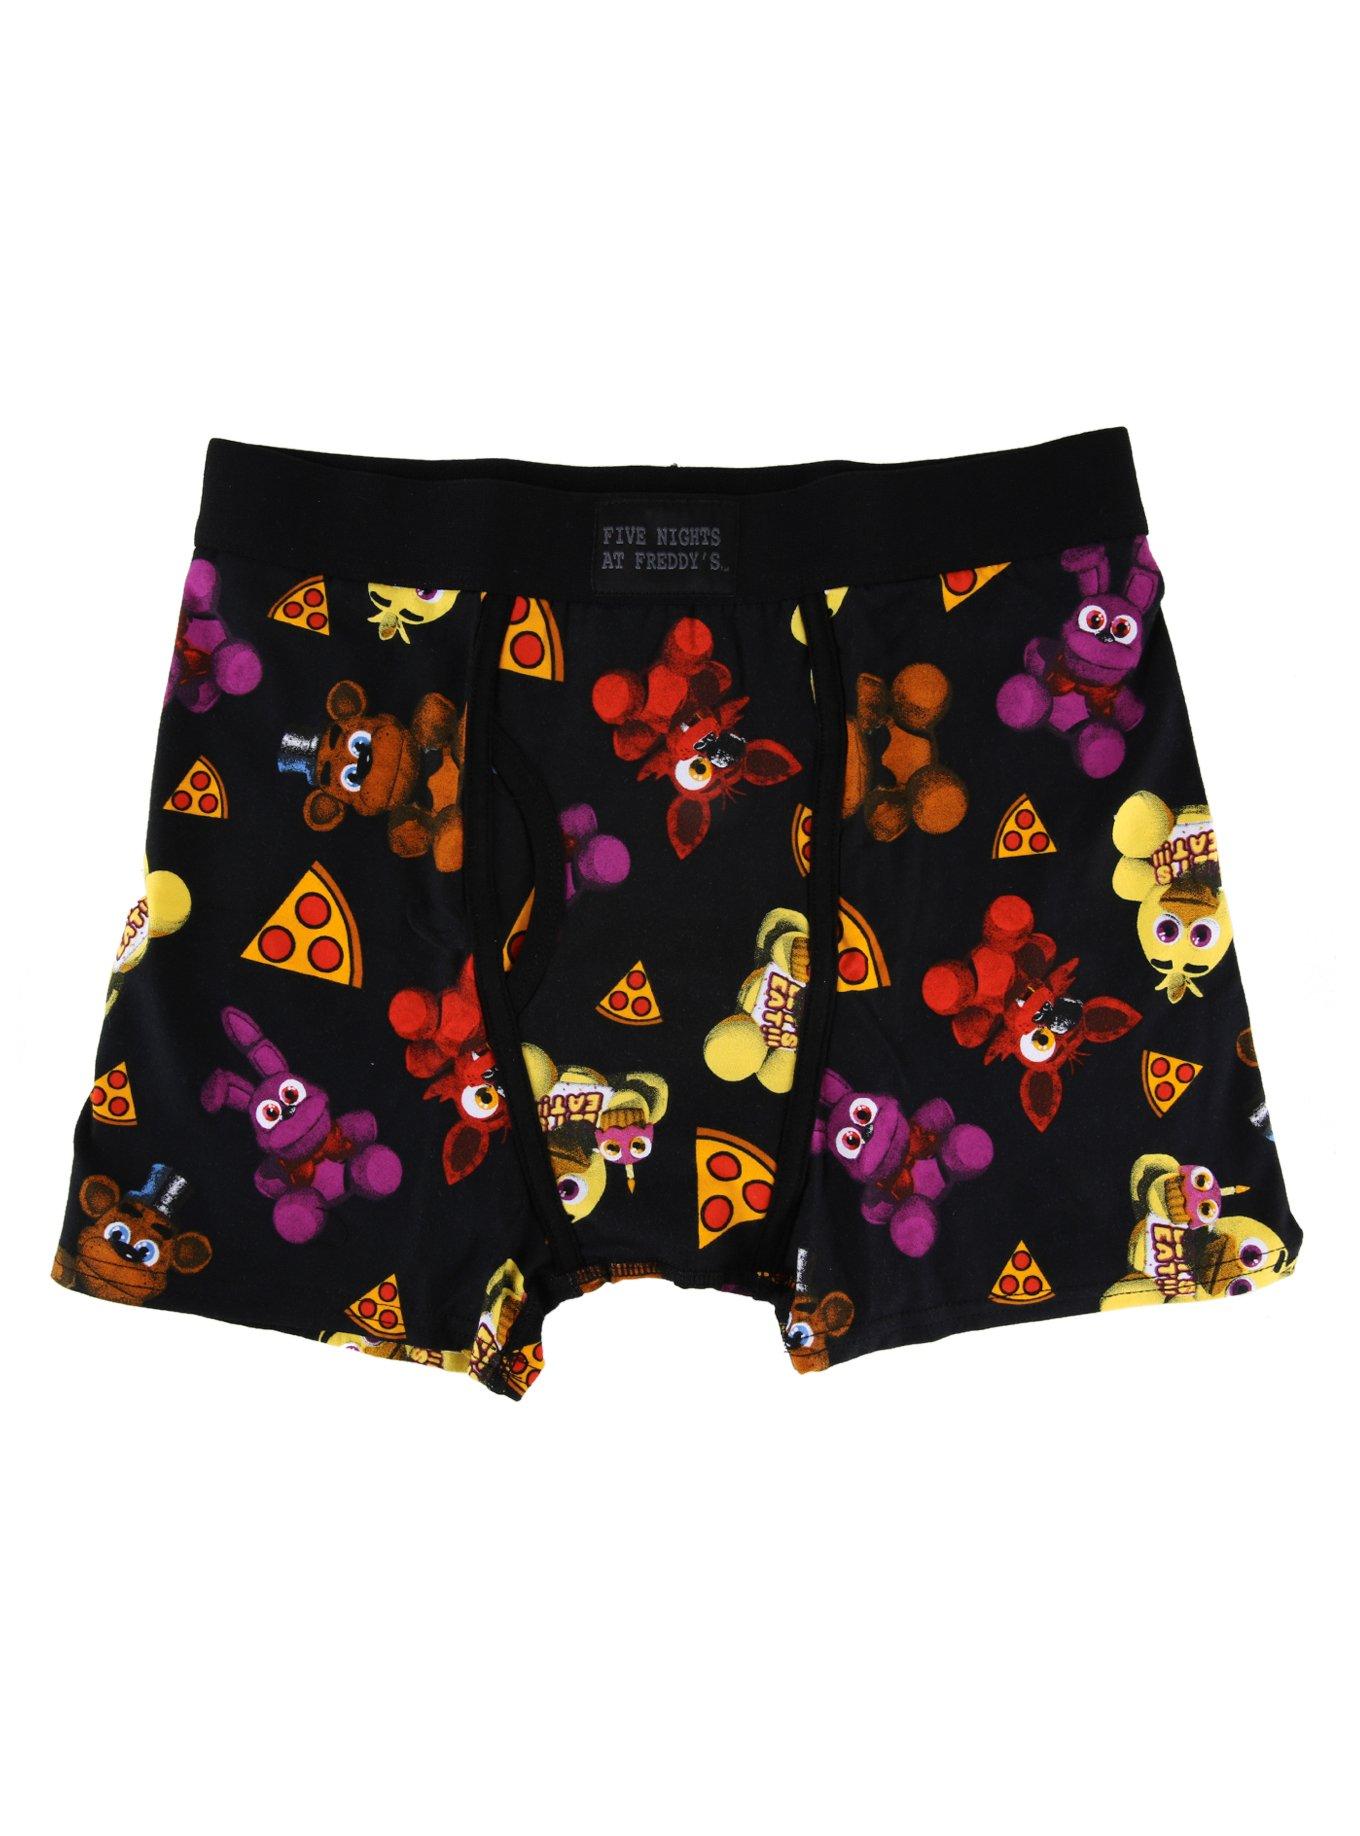 Super Mario Boxer Briefs Underwear Boy Size 8